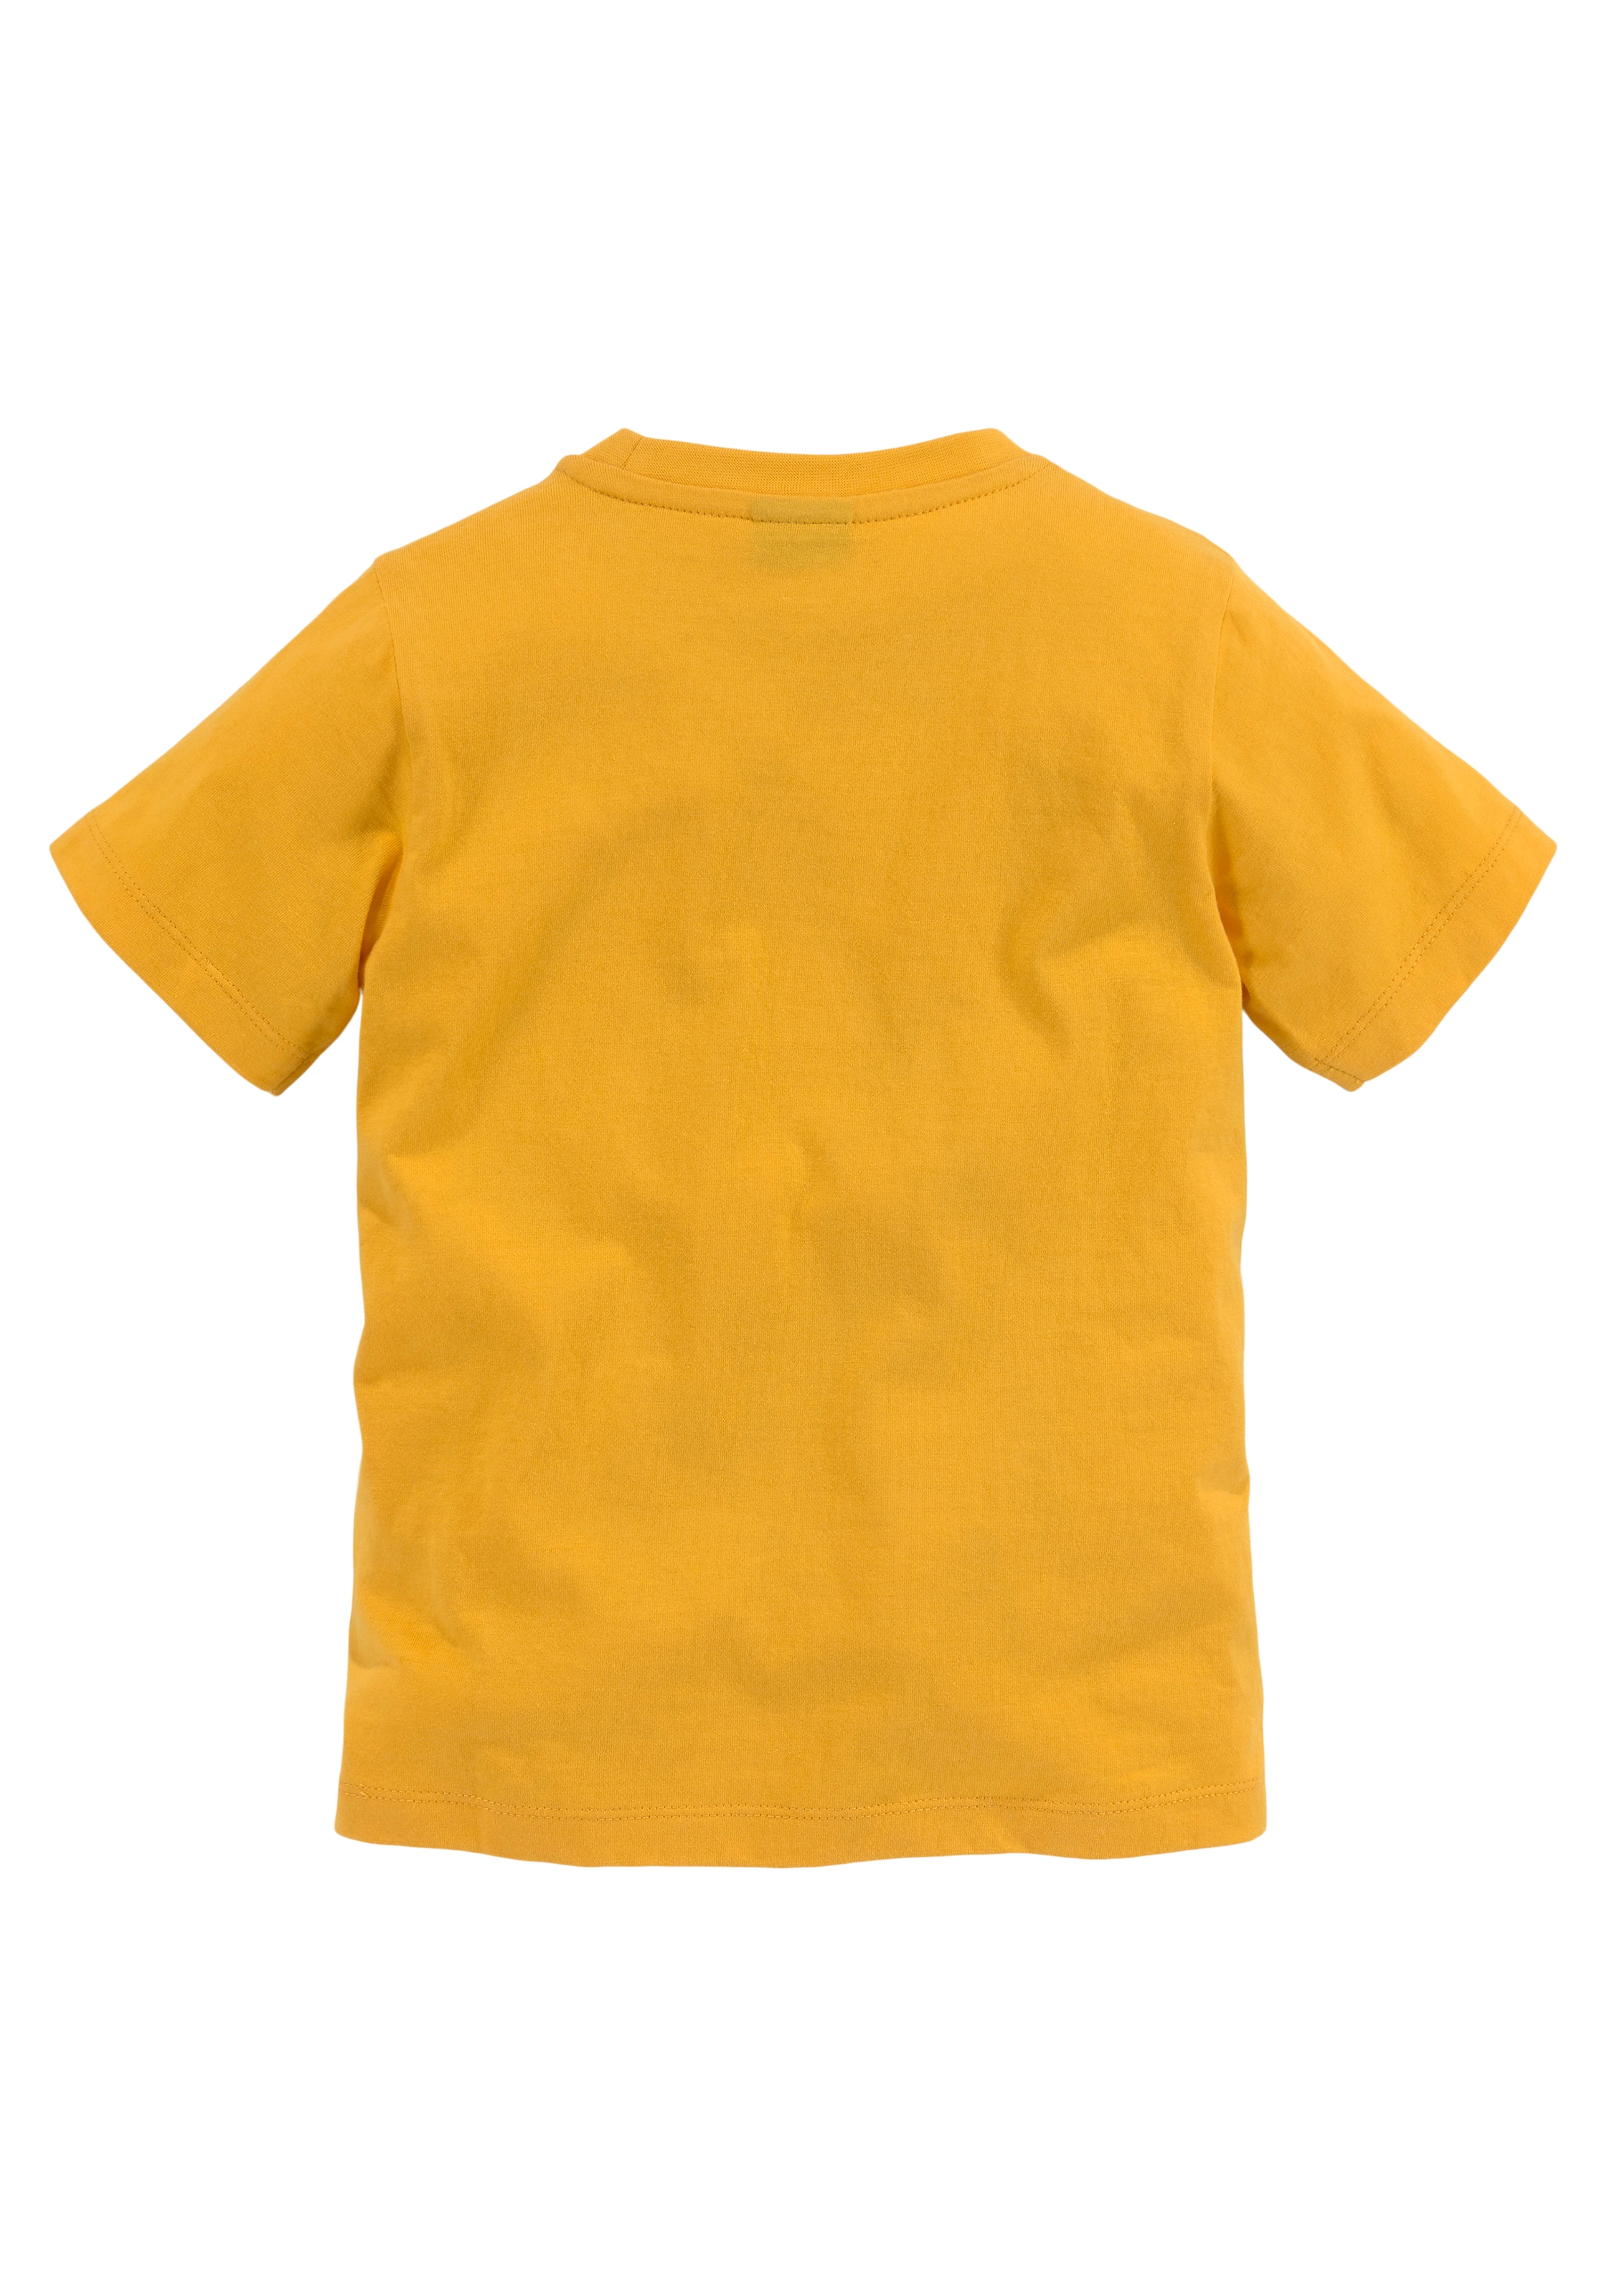 »LITTLE TIGER« bei KIDSWORLD T-Shirt